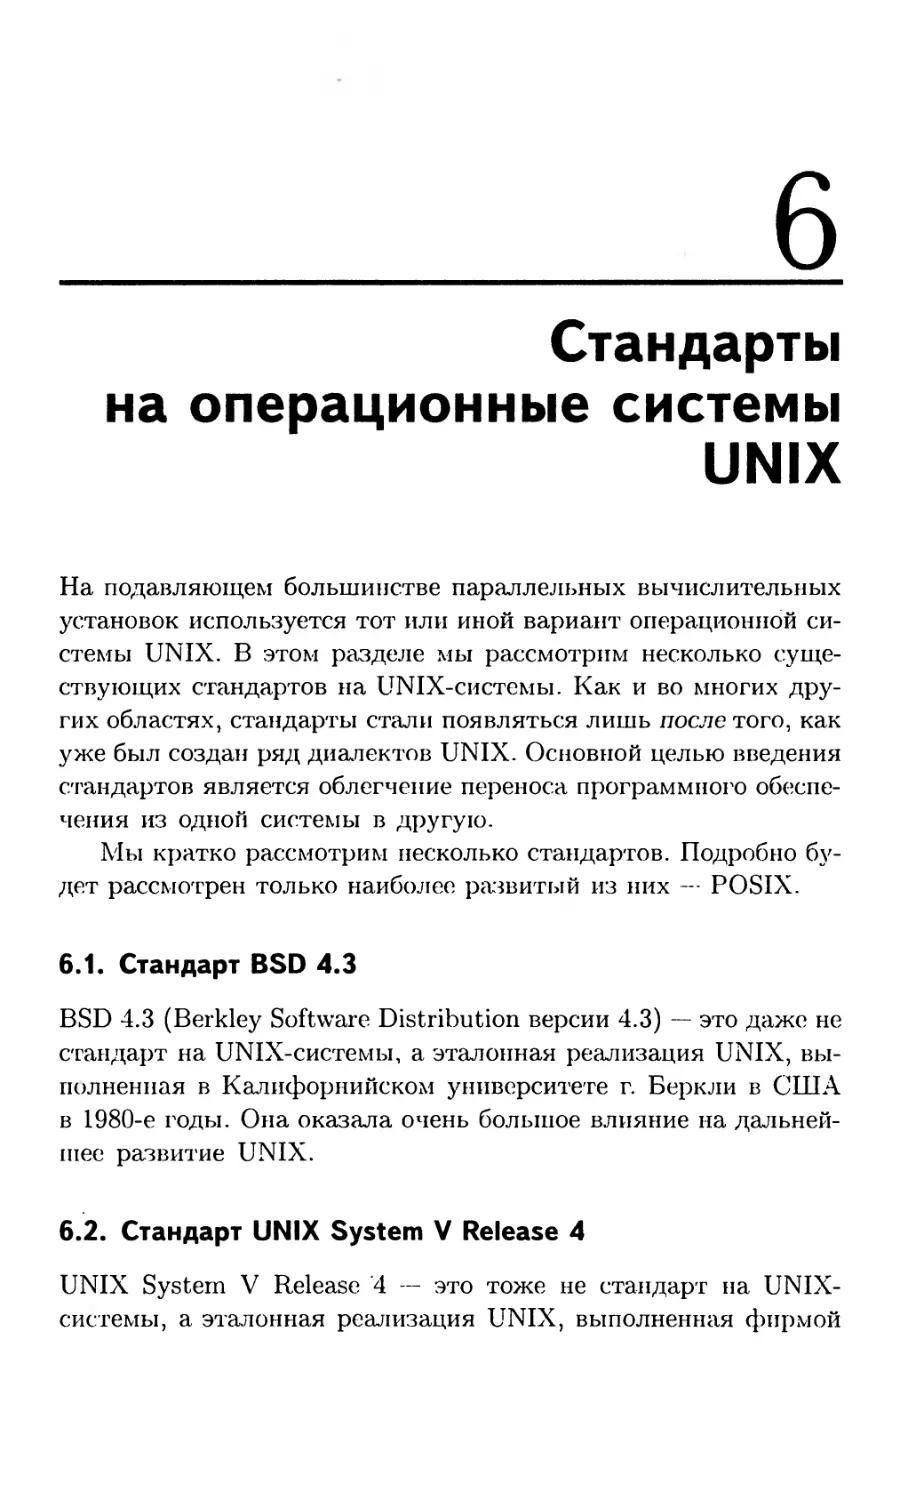 Глава 6. Стандарты на операционные системы UNIX
6.2. Стандарт UNIX System V Release 4